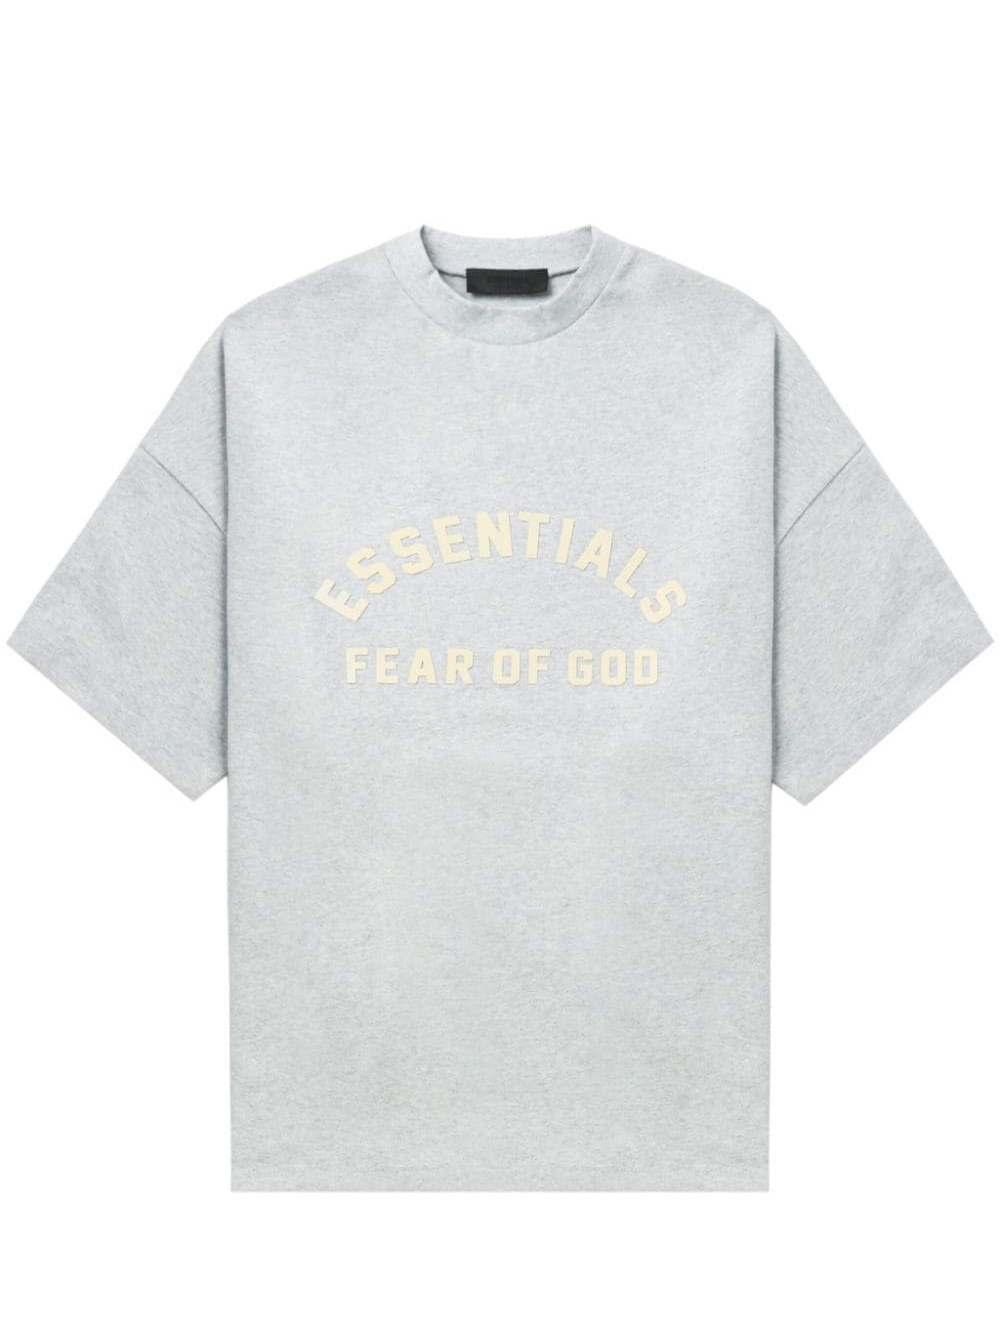 FEAROFGOD_ESSENTIALSCrewneckT-Shirt